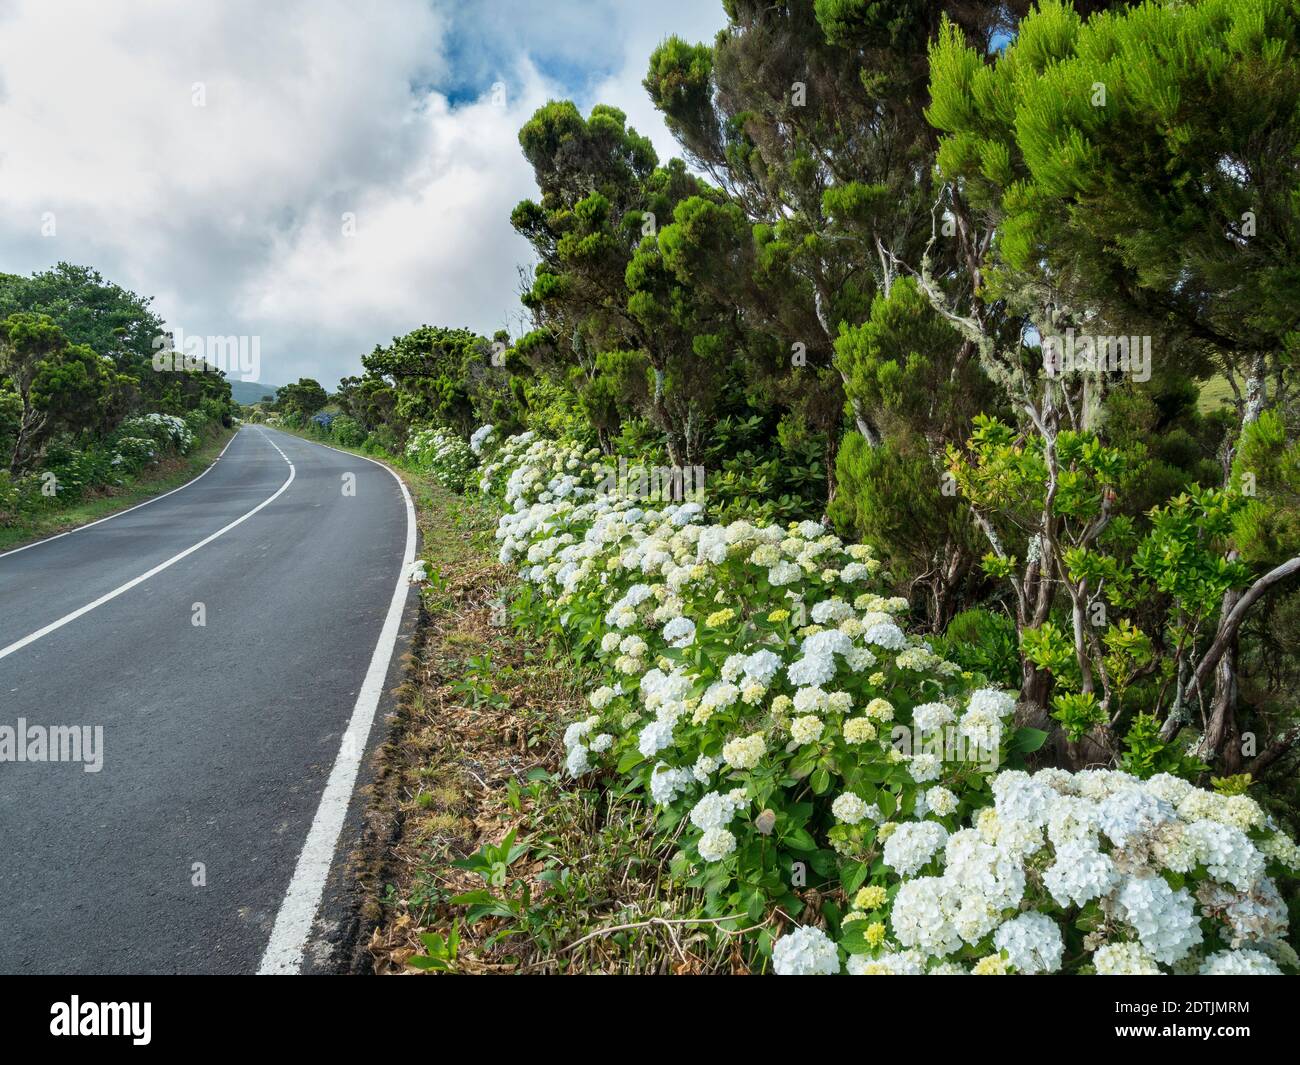 Haie d'Hortensia (Hydrangea macrophylla), une plante introduite, au bord de la route. Pico Island, une île des Açores (Ilahas dos Acores) dans l'Atlantique Banque D'Images